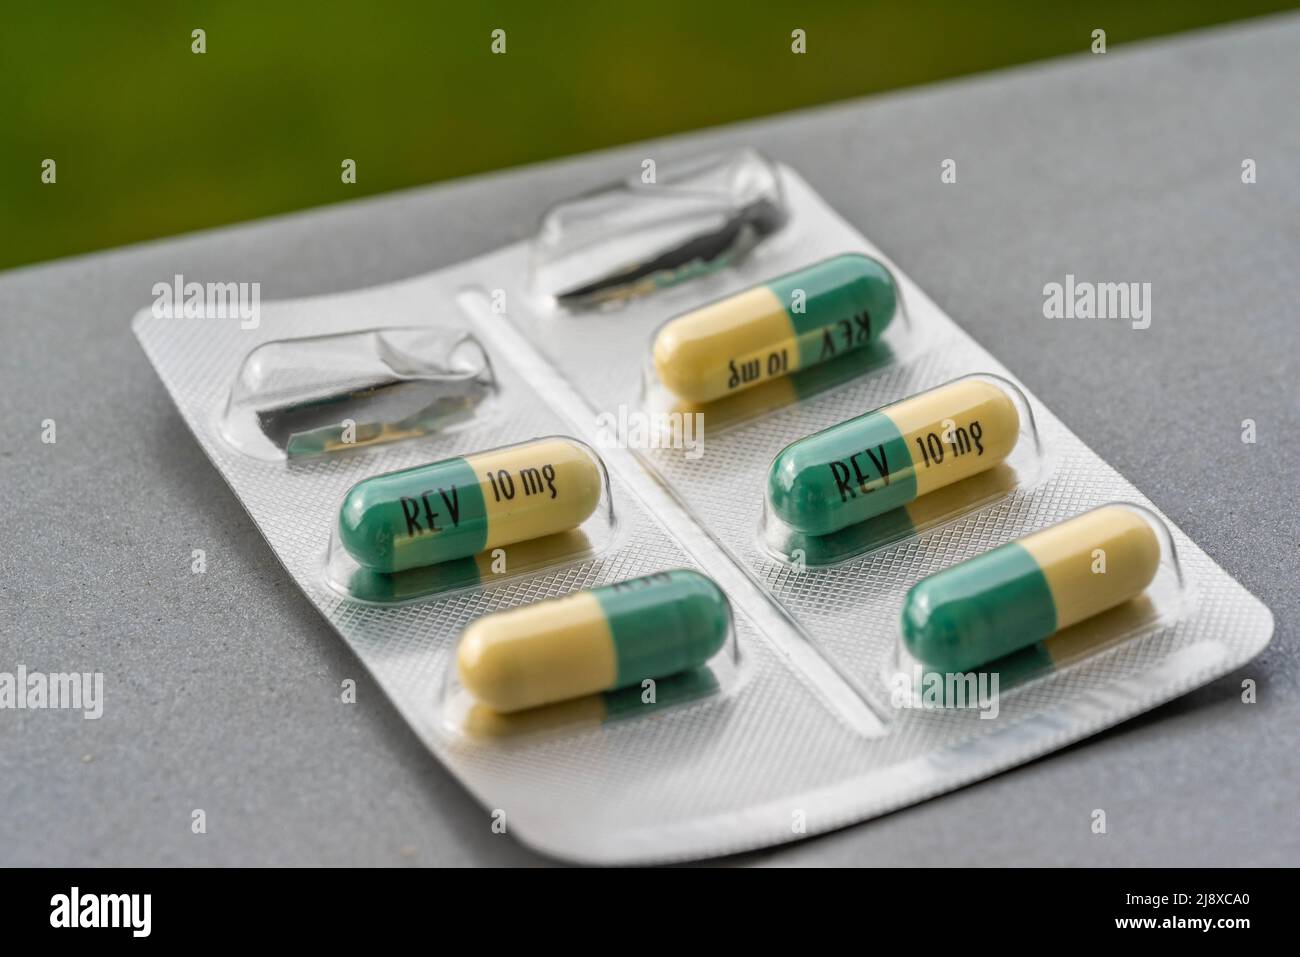 Primer plano de un blister usado para Revlimid 10mg tabletas - medicamento para tratar el cáncer de mieloma múltiple Foto de stock